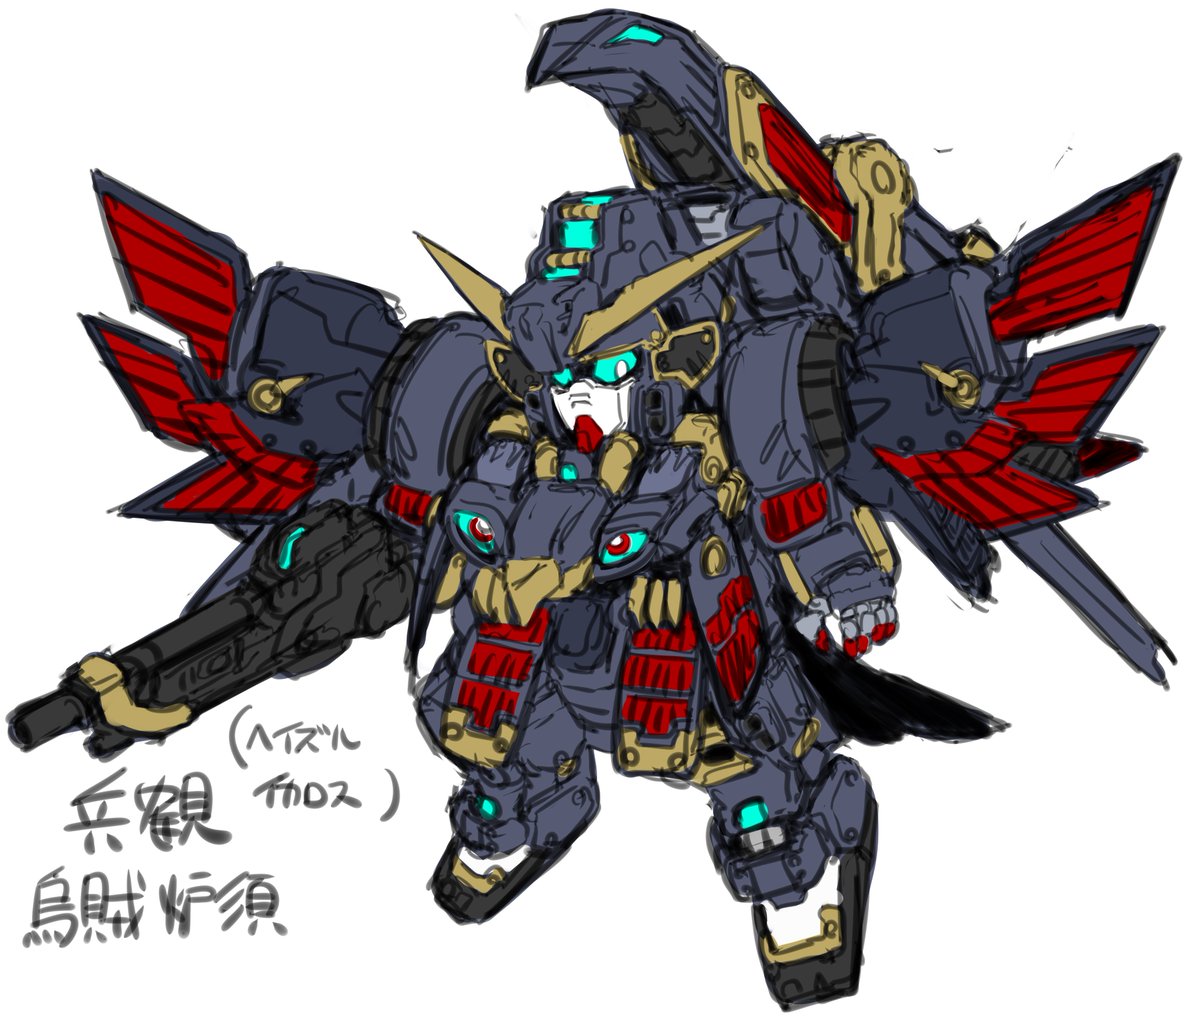 solo blue eyes white background holding weapon wings chibi  illustration images